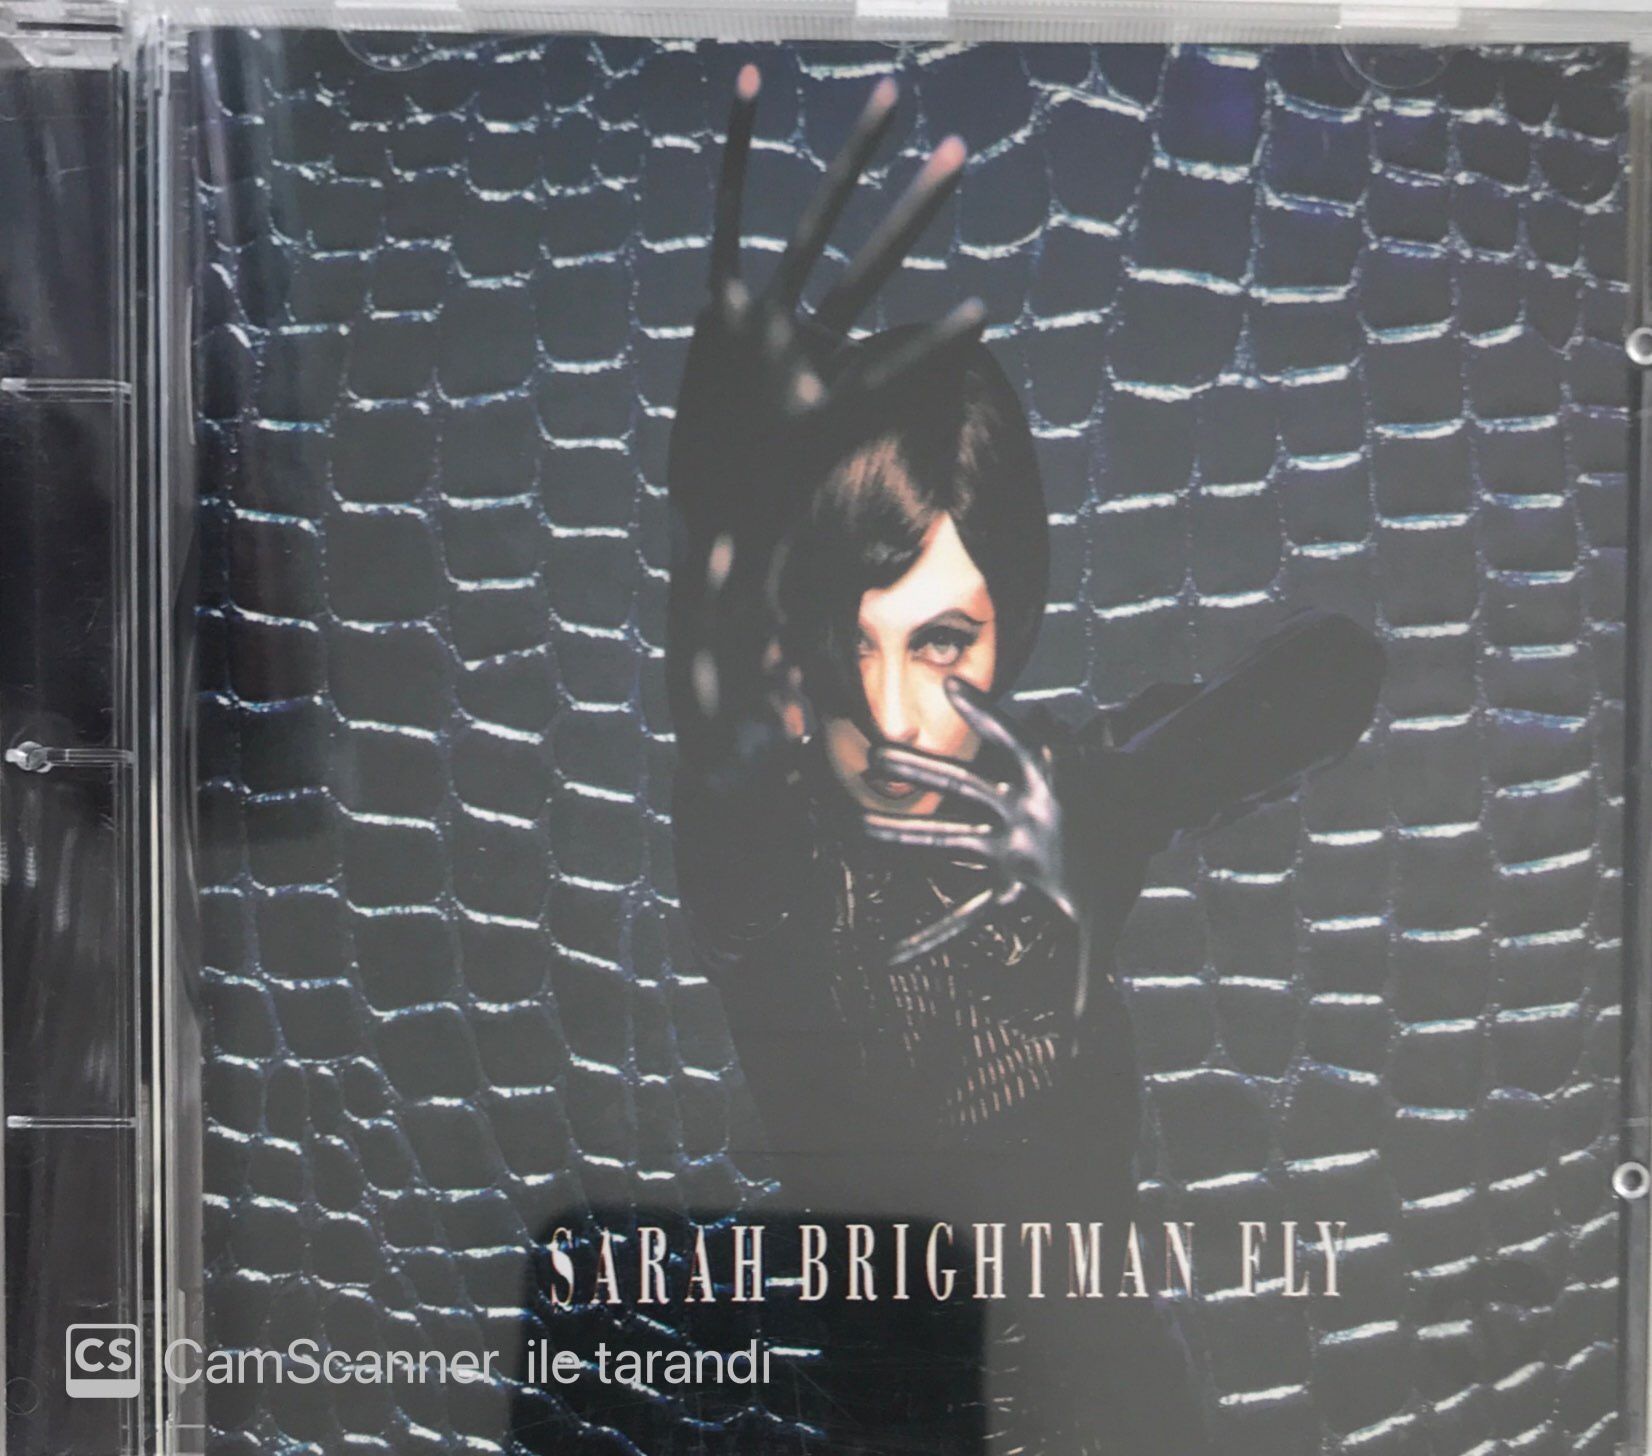 Sarah Brightman Fly CD Plak Satın Al